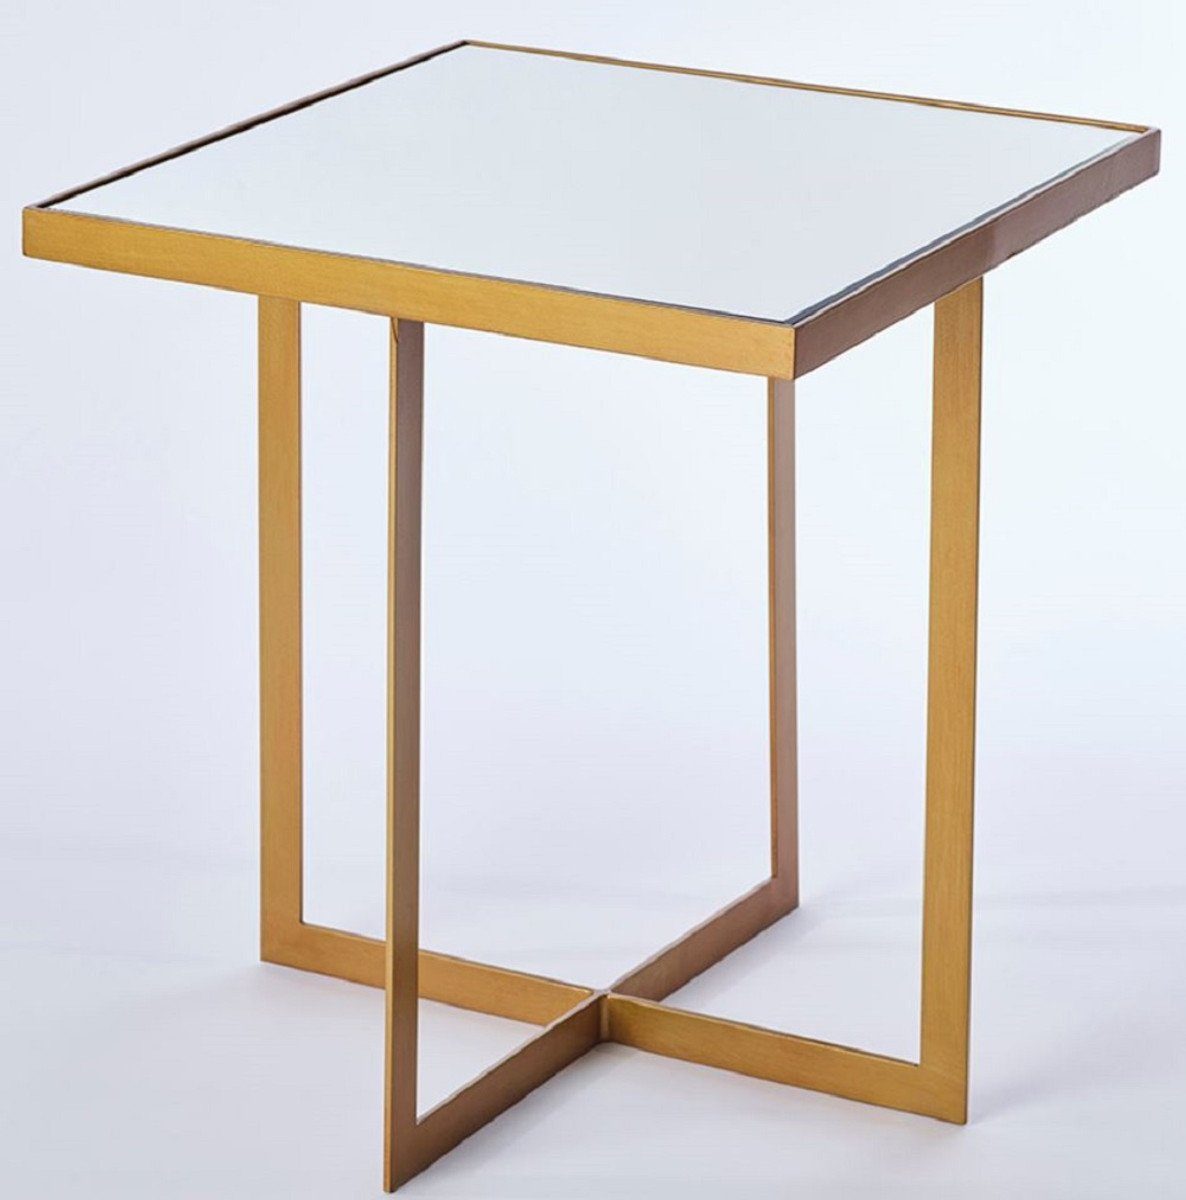 Casa Padrino Beistelltisch Luxus Beistelltisch Bronze 51 x 51 x H. 55 cm - Metall Tisch mit Spiegelglas Tischplatte - Luxus Möbel